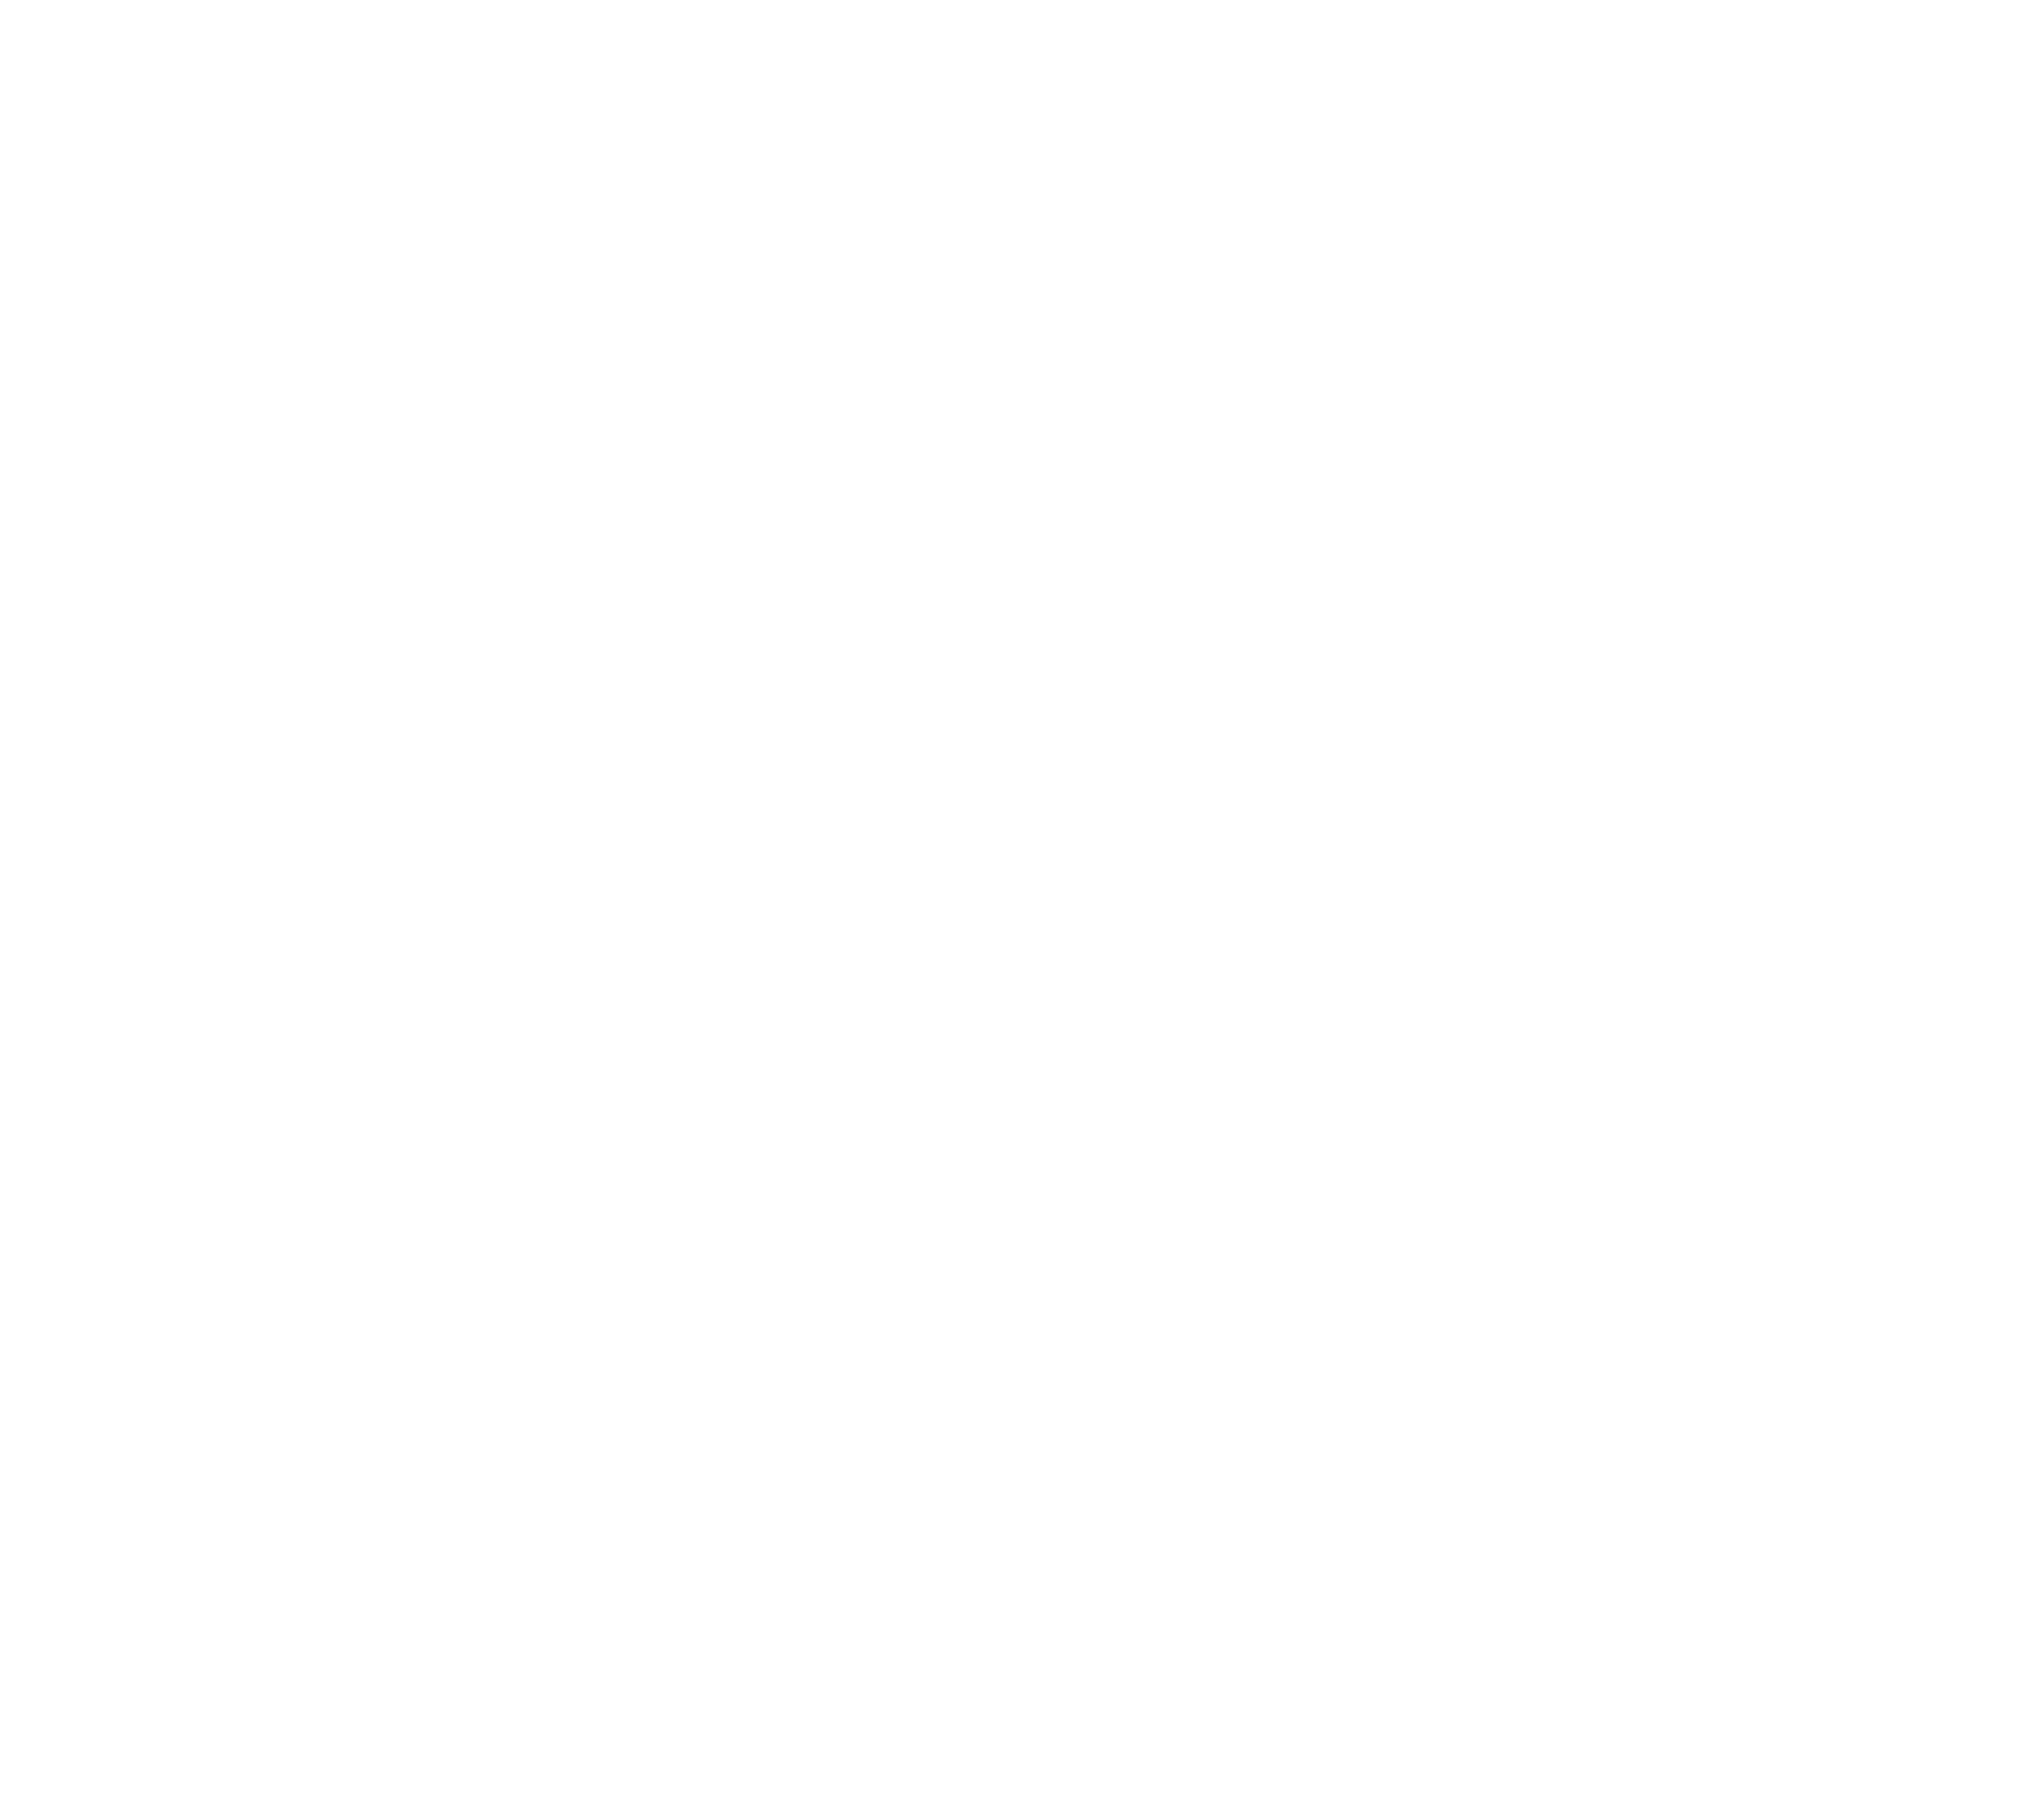 Prose on Pixels